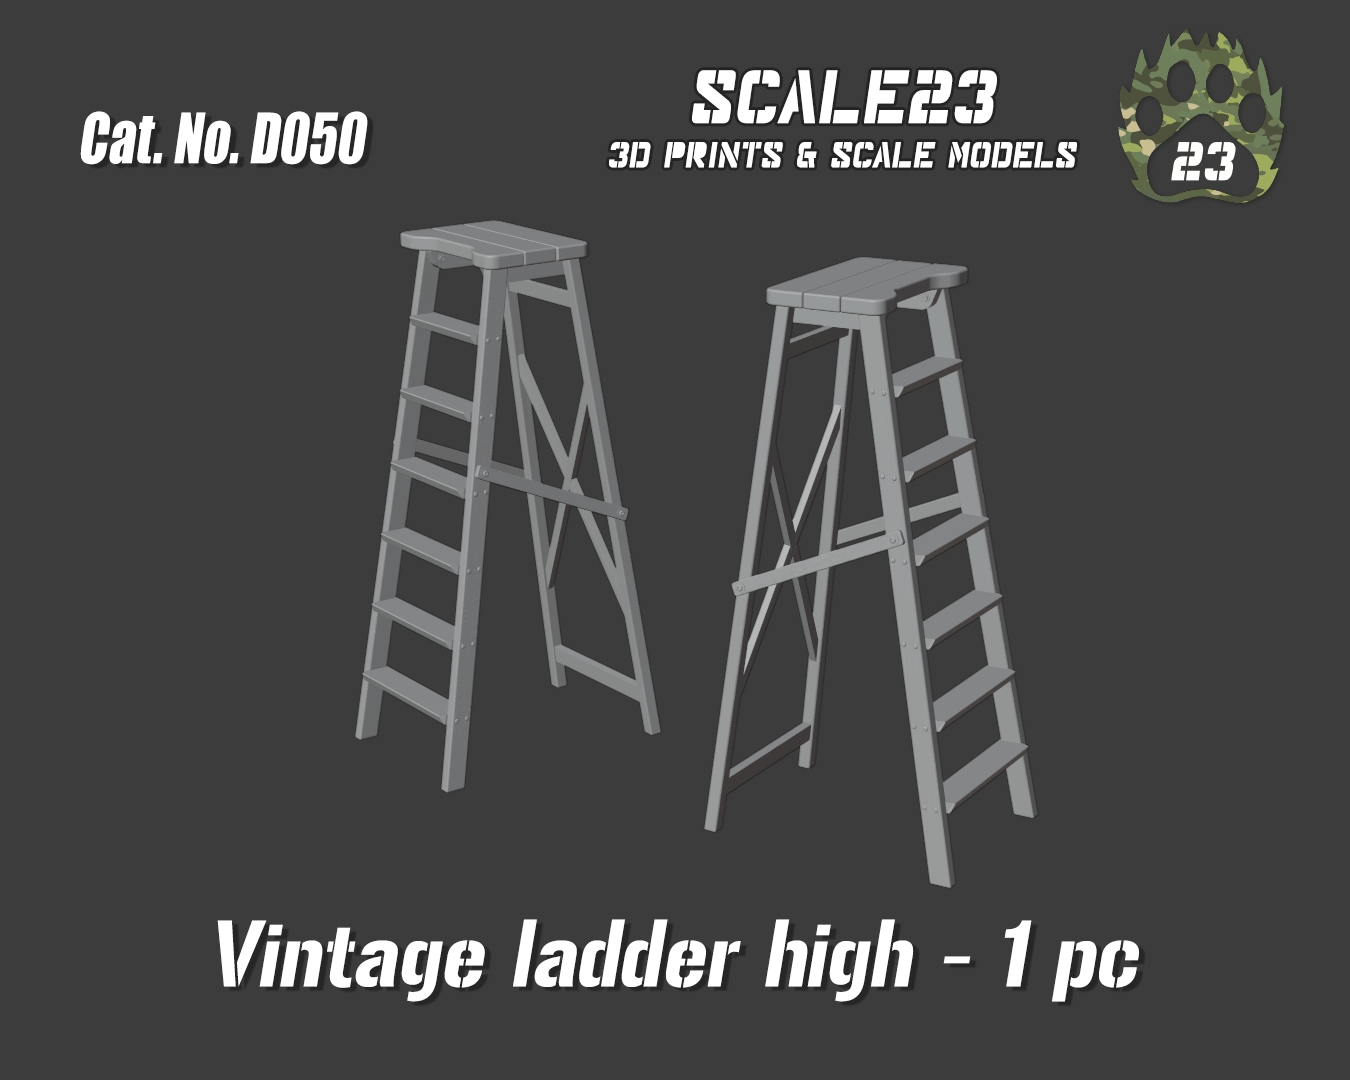 Wooden ladder - high